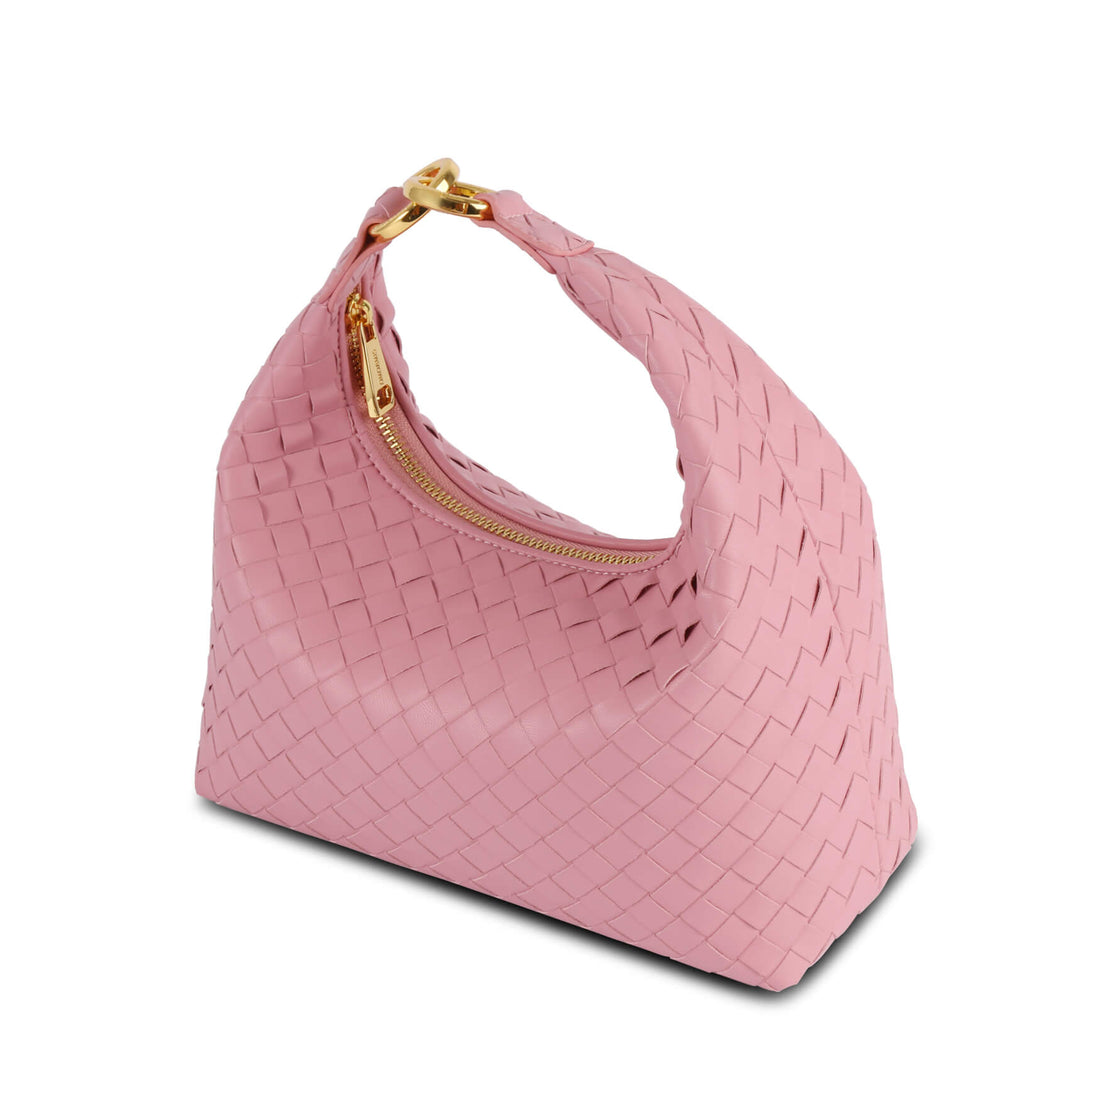 SINBONO Vienna Pink Shoulder Bag with Golden Strap